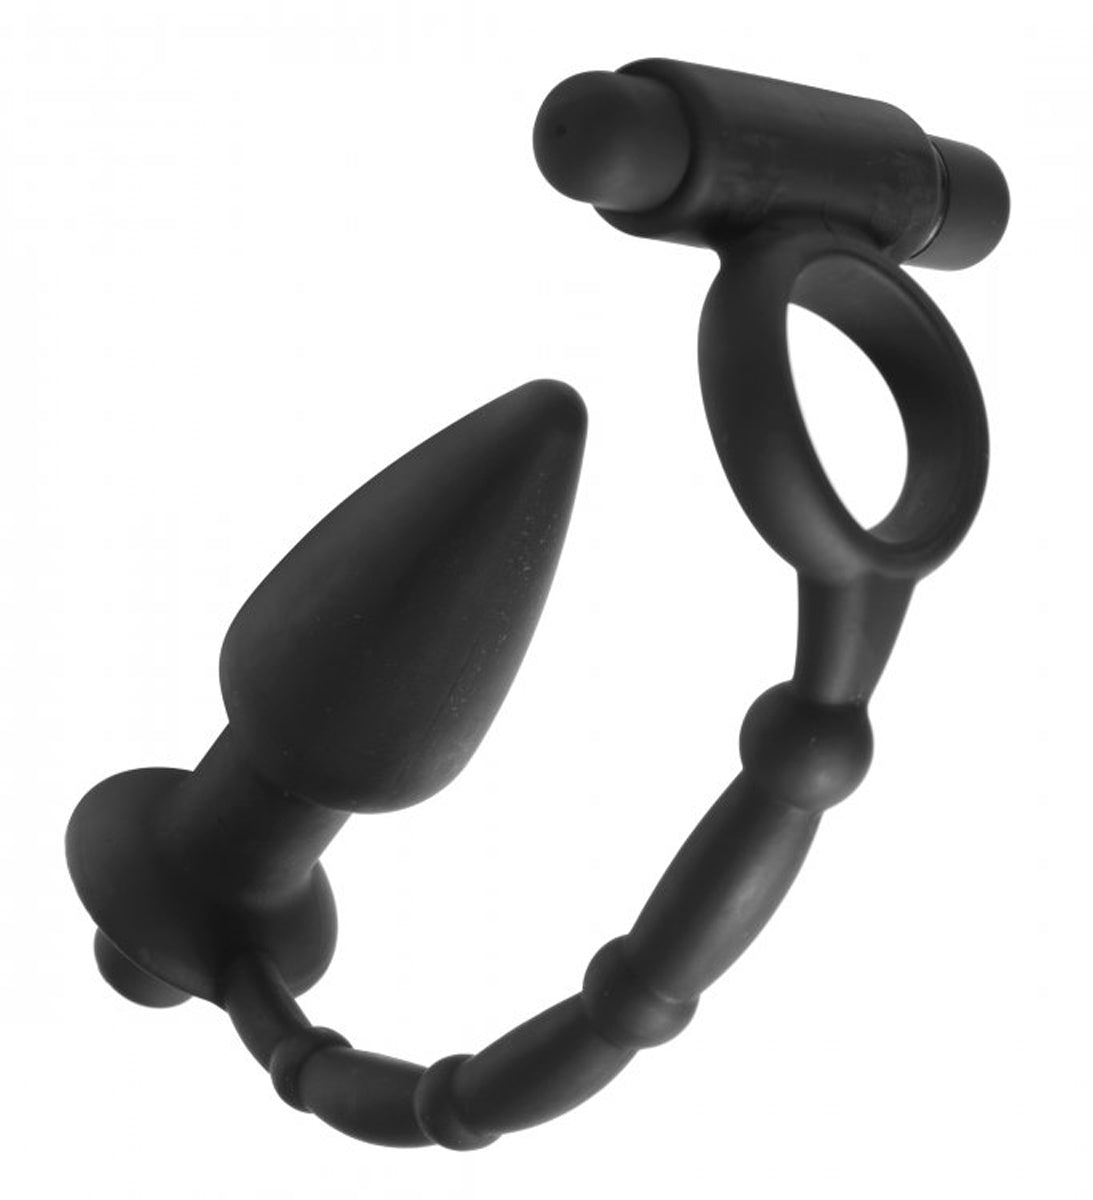 Vibrerende cock ring met vibrerende butt plug er aan verbonden van het merk Master Series. Verkrijgnbaar bij Flavourez